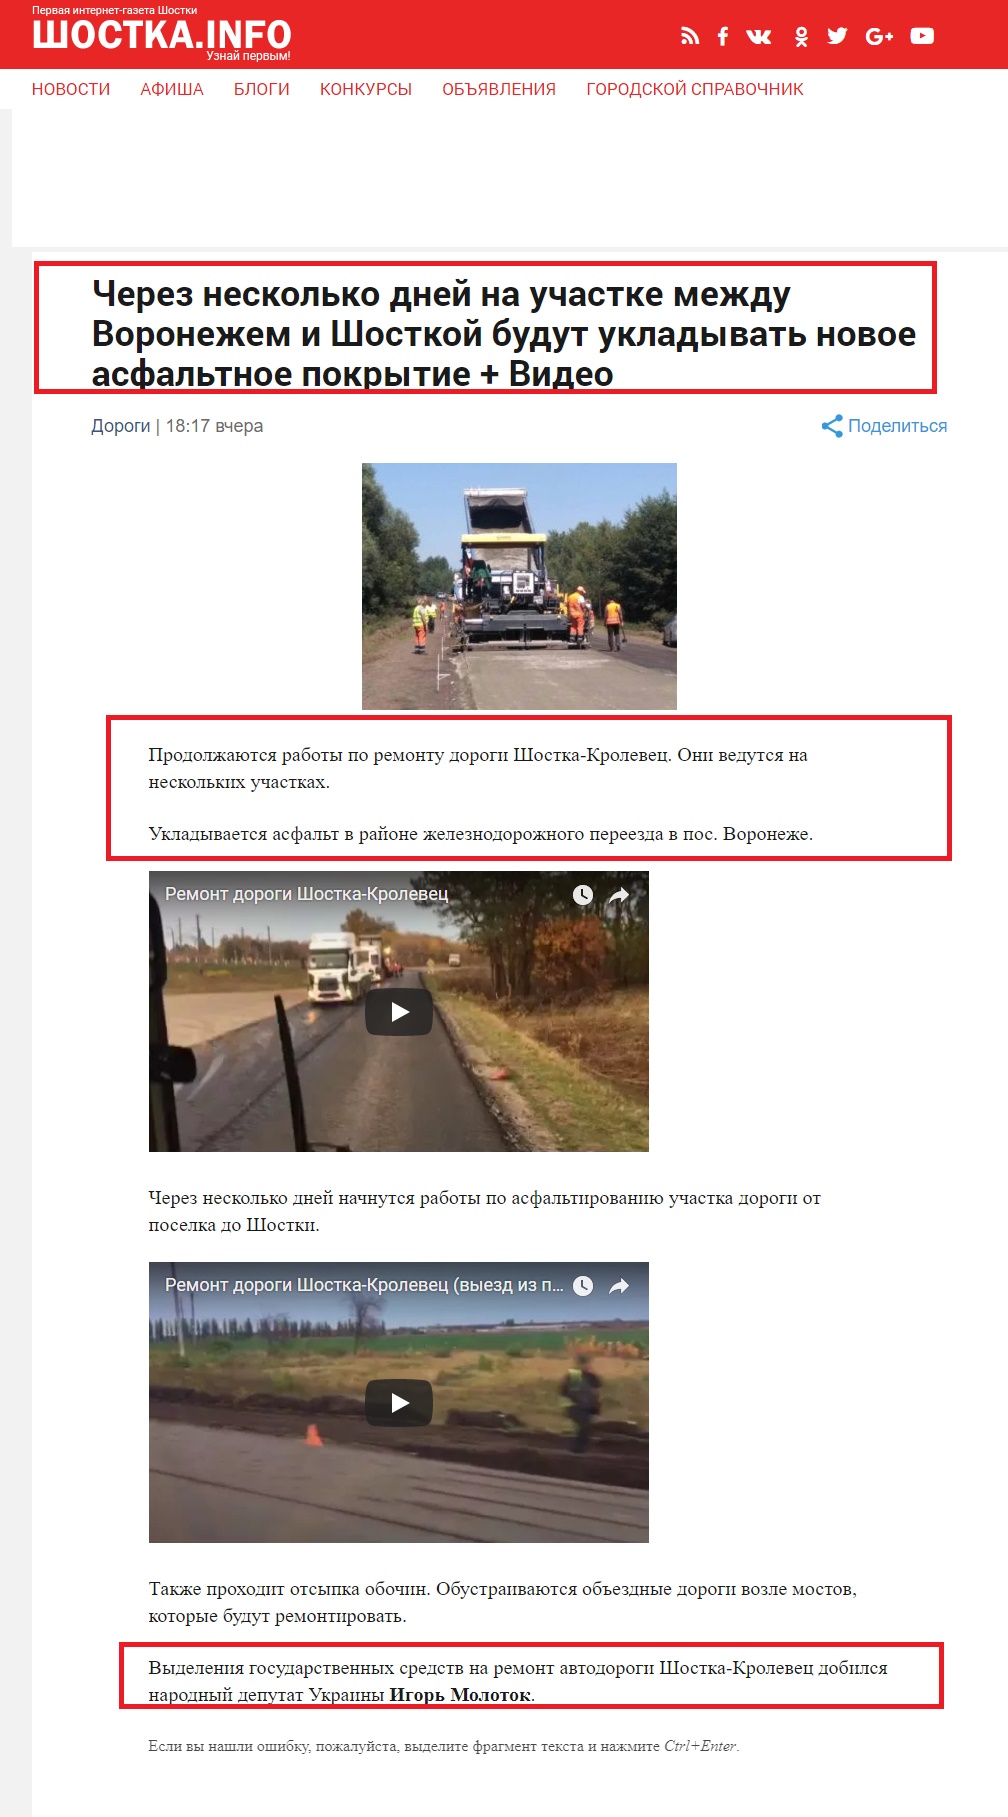 http://shostka.info/shostkanews/cherez-neskolko-dnej-na-uchastke-mezhdu-voronezhem-i-shostkoj-budut-ukladyvat-novoe-asfaltnoe-pokrytie-video/